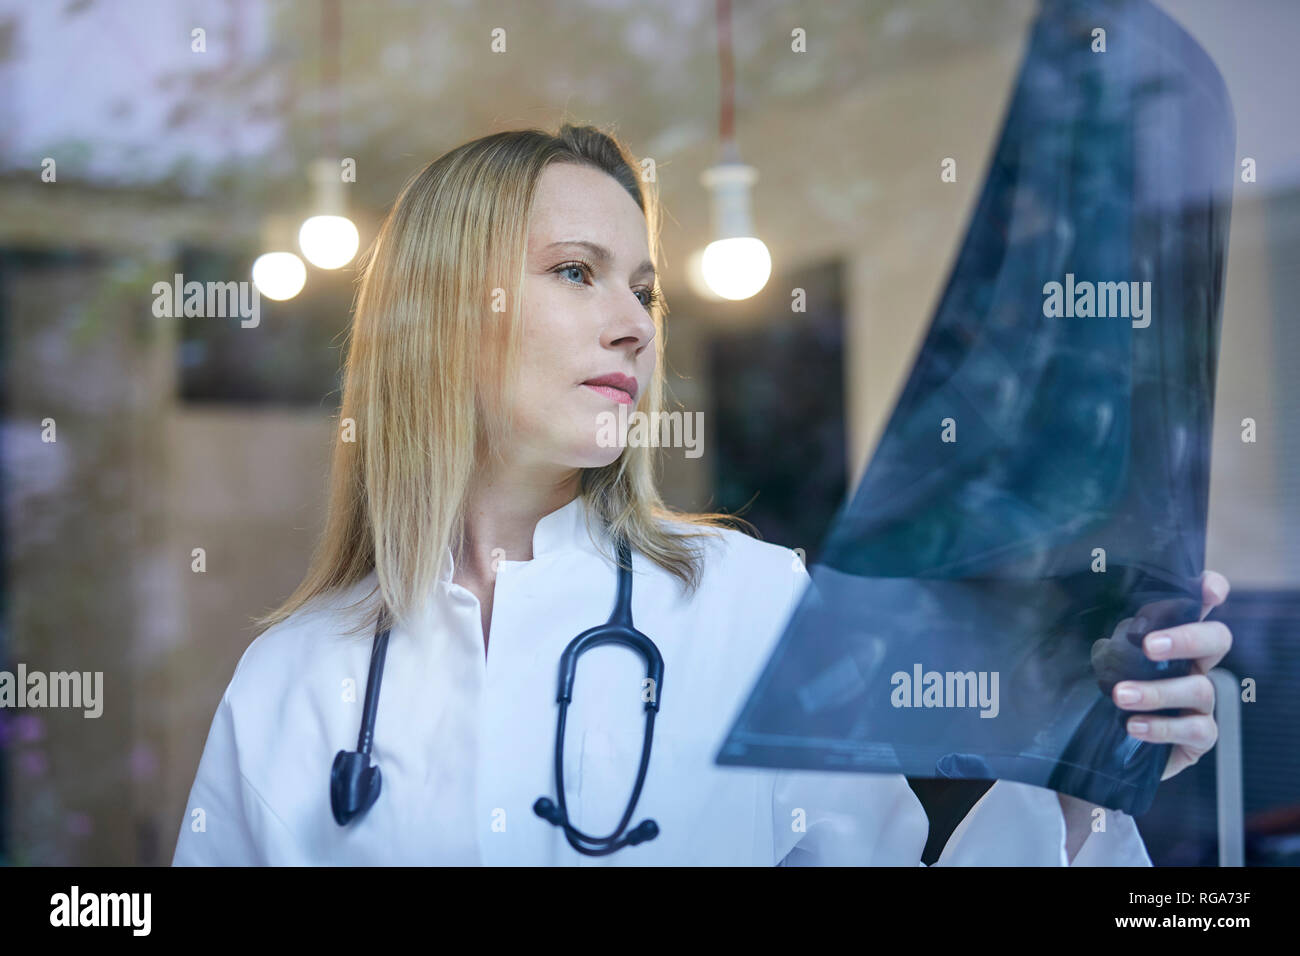 Medico donna guardando immagine a raggi x dietro il vetro di finestra Foto Stock